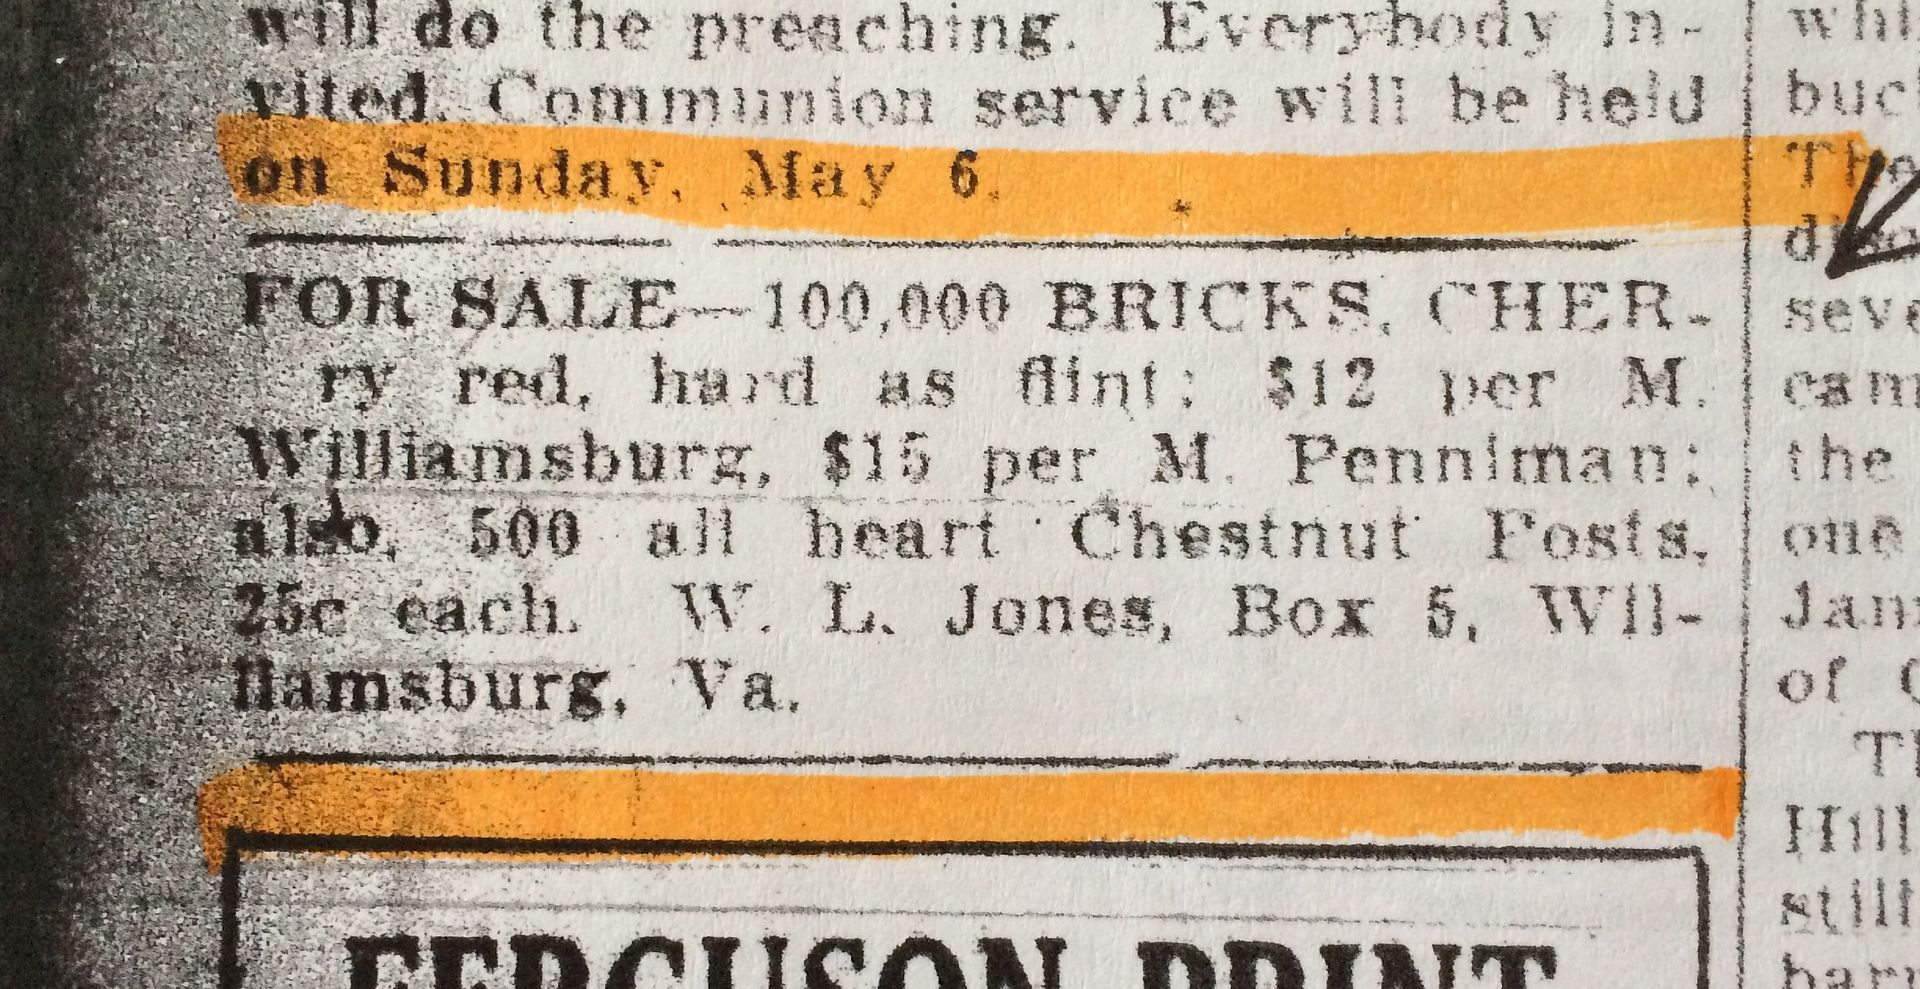 Bricks for sale. Cheap. 